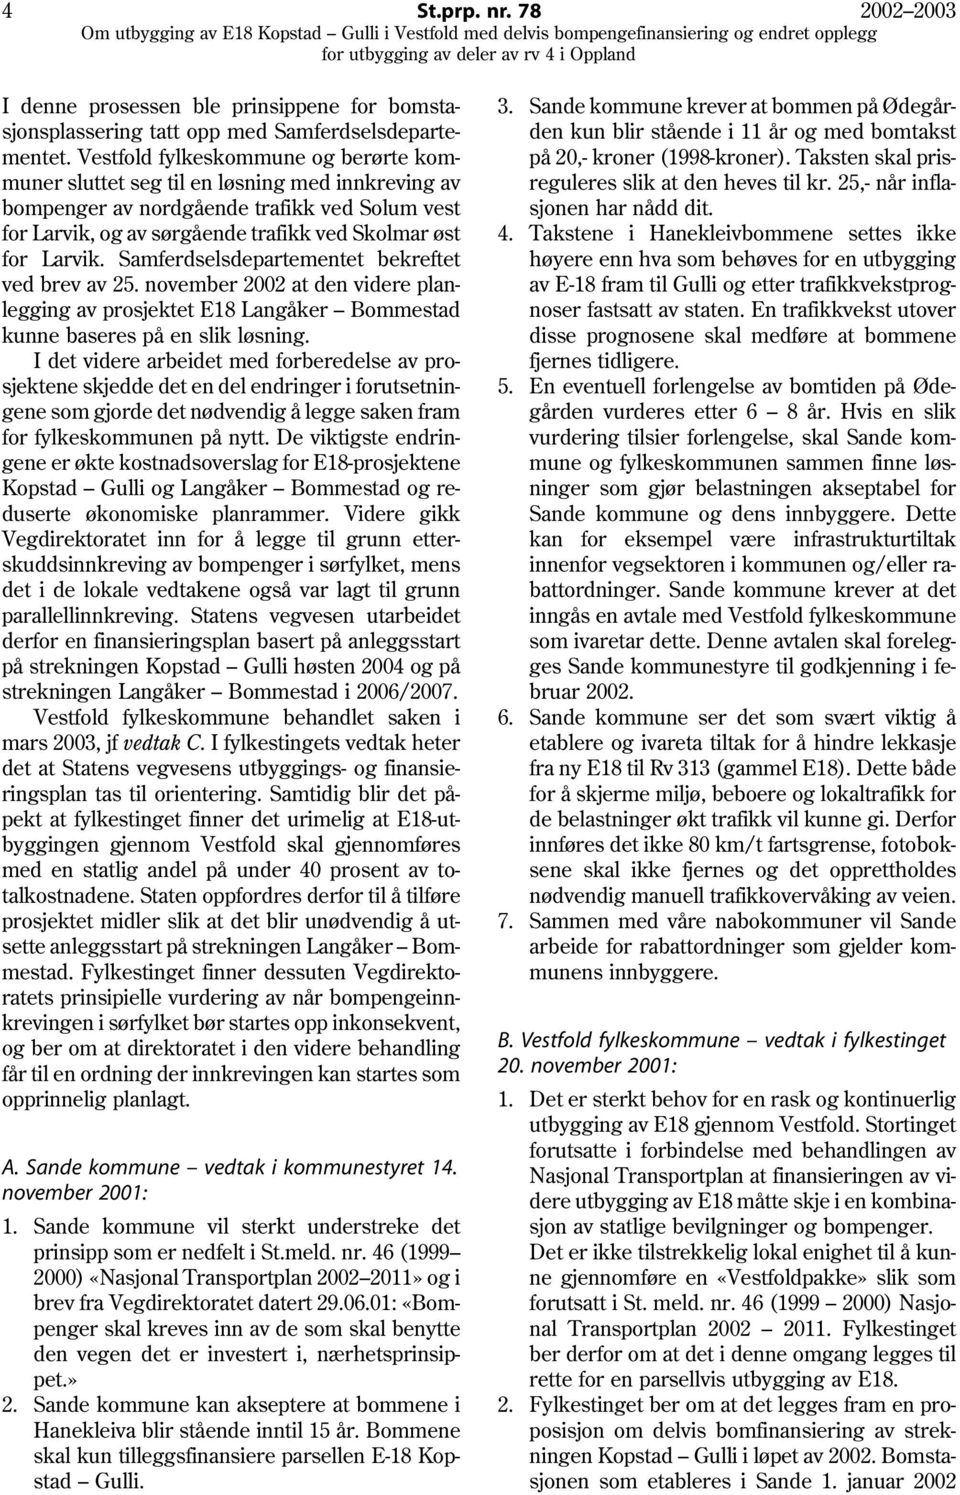 Samferdselsdepartementet bekreftet ved brev av 25. november 2002 at den videre planlegging av prosjektet E18 Langåker Bommestad kunne baseres på en slik løsning.